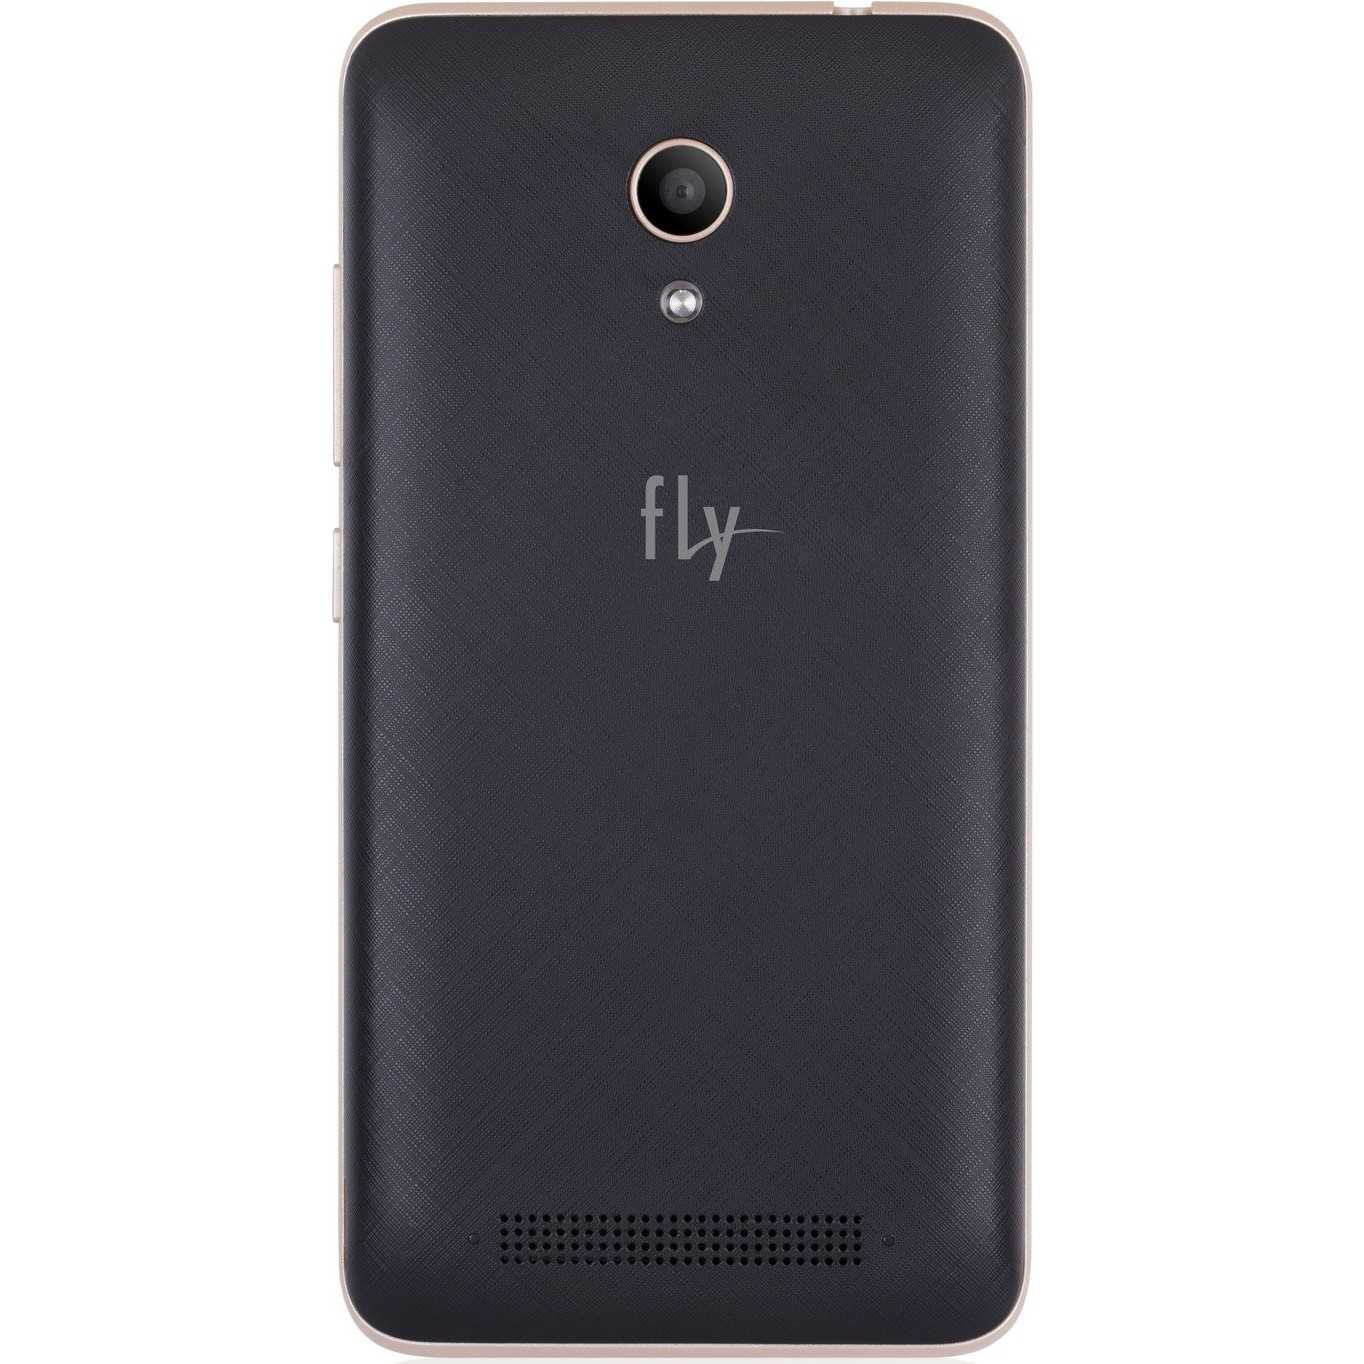 Fly lx600 mega - купить , скидки, цена, отзывы, обзор, характеристики - мобильные телефоны